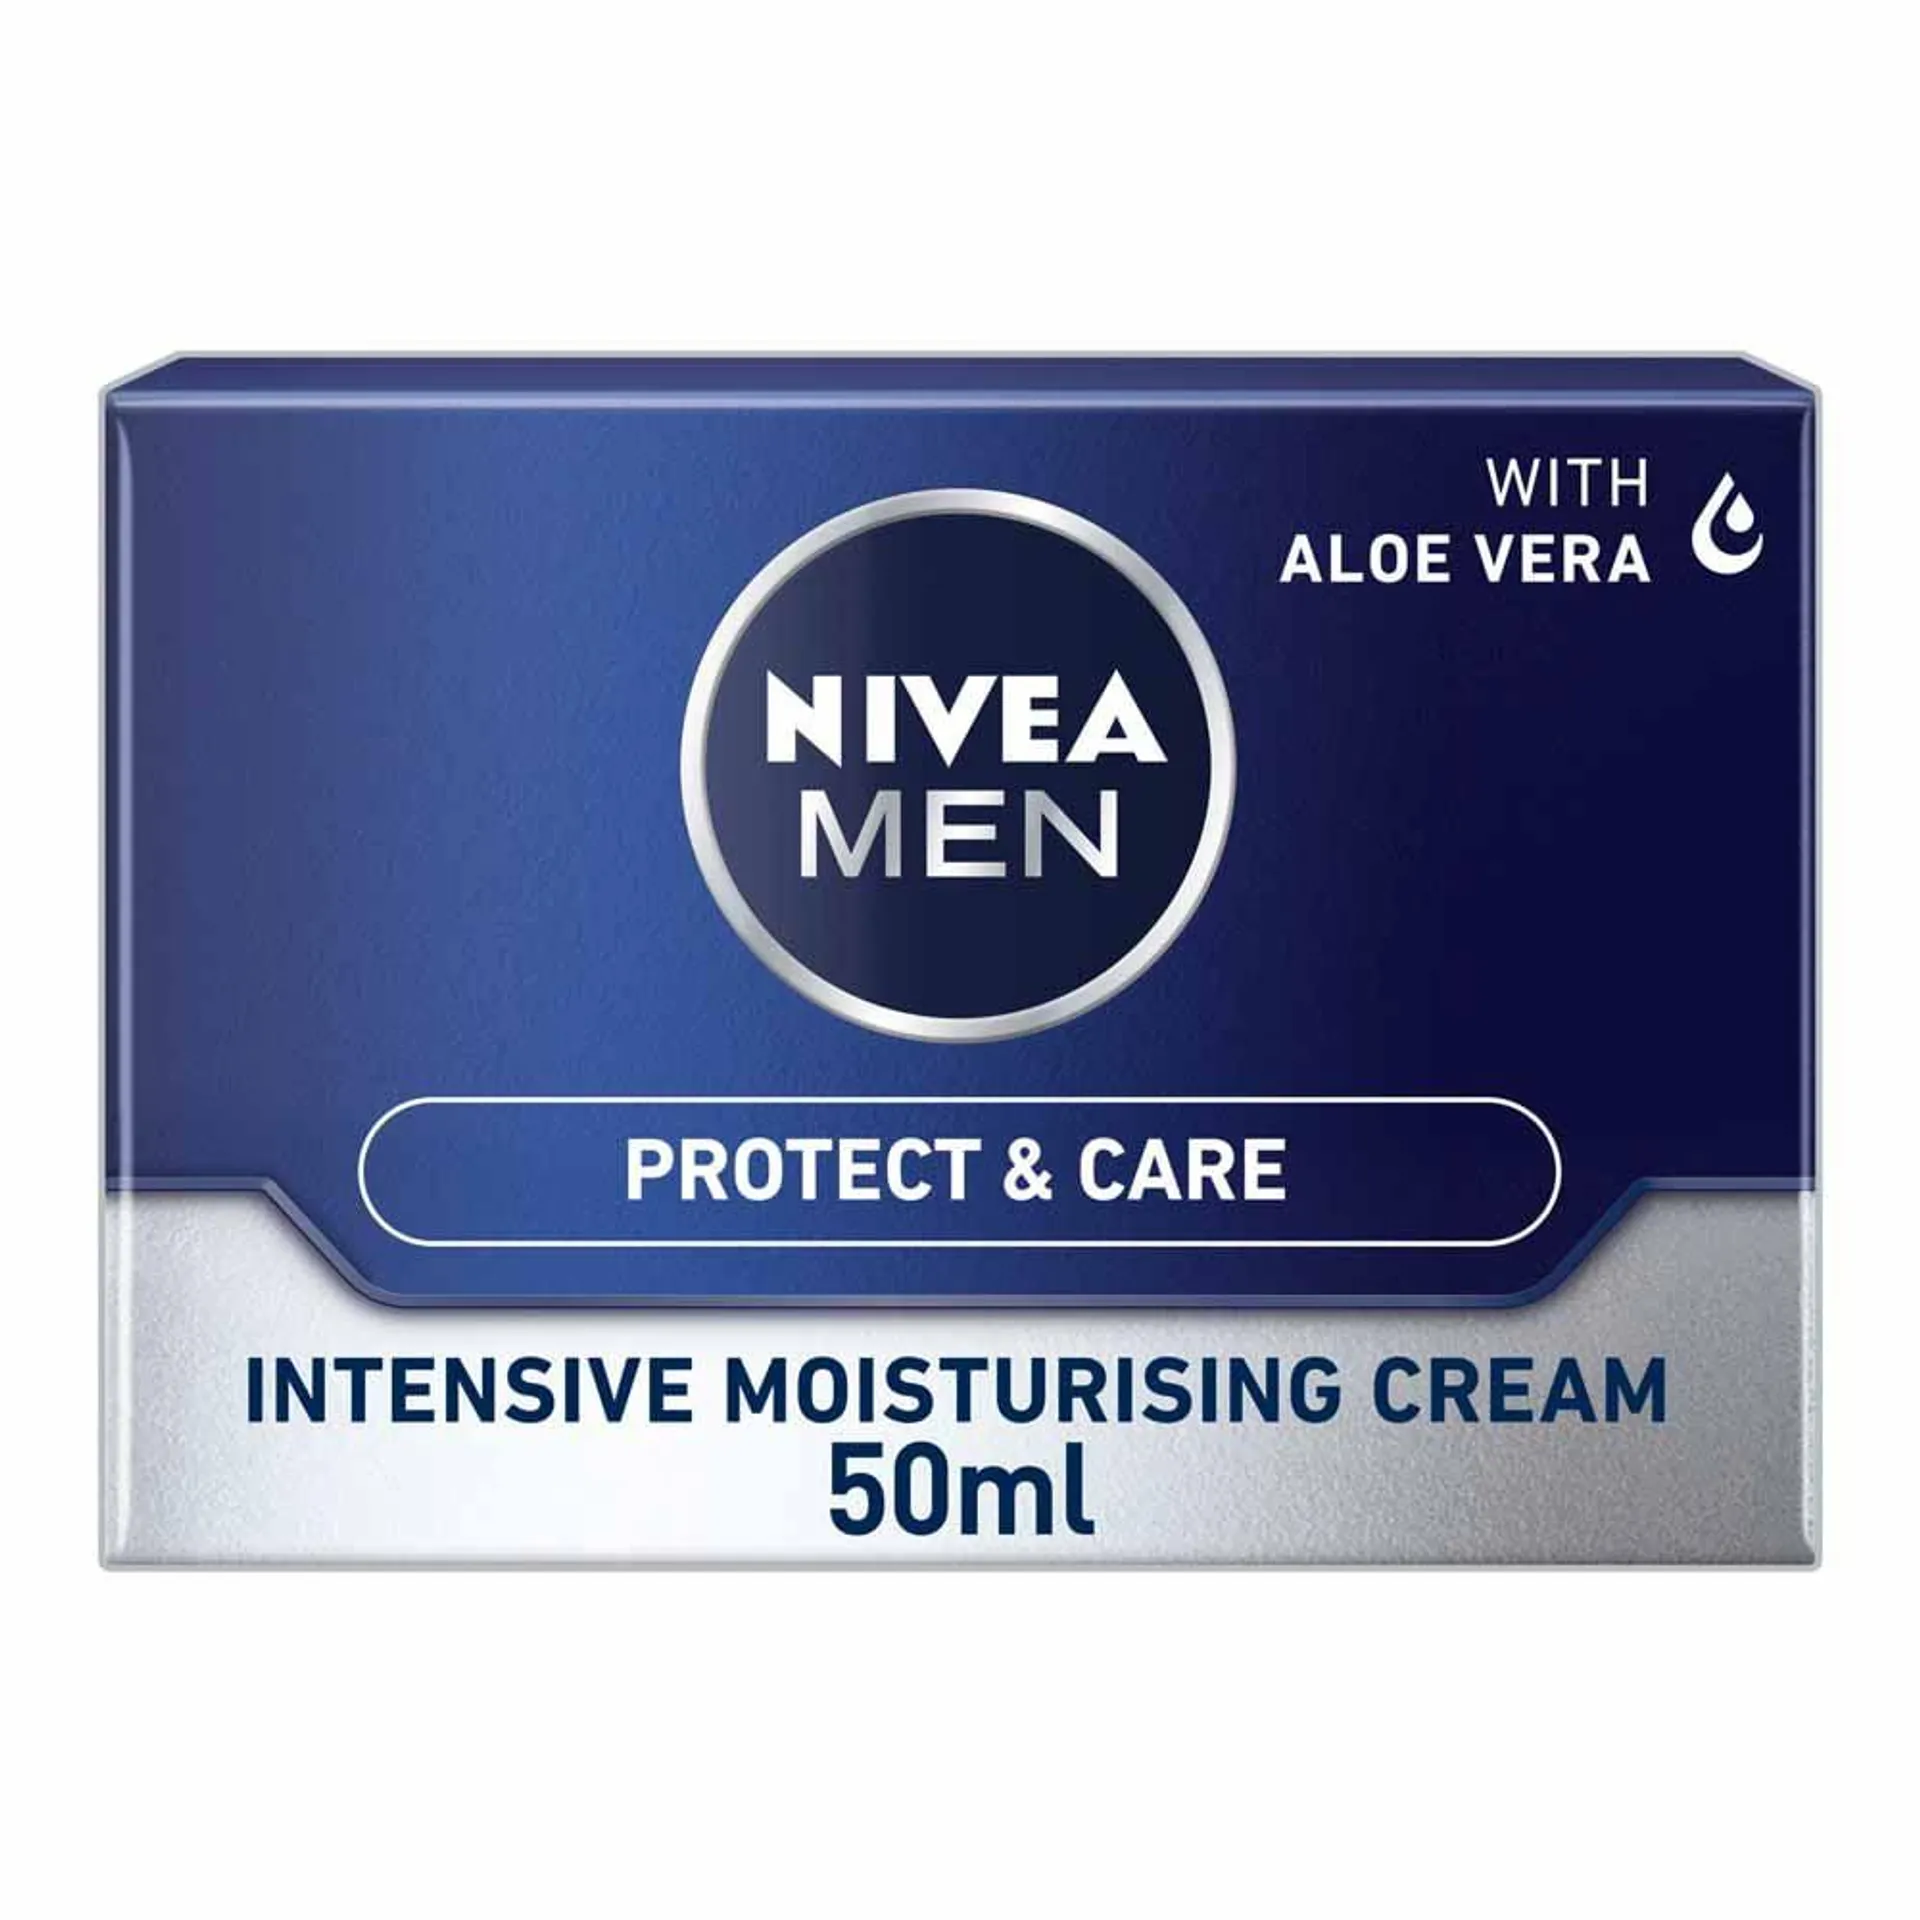 Nivea Men Original Intensive Moisturising Cream 50ml